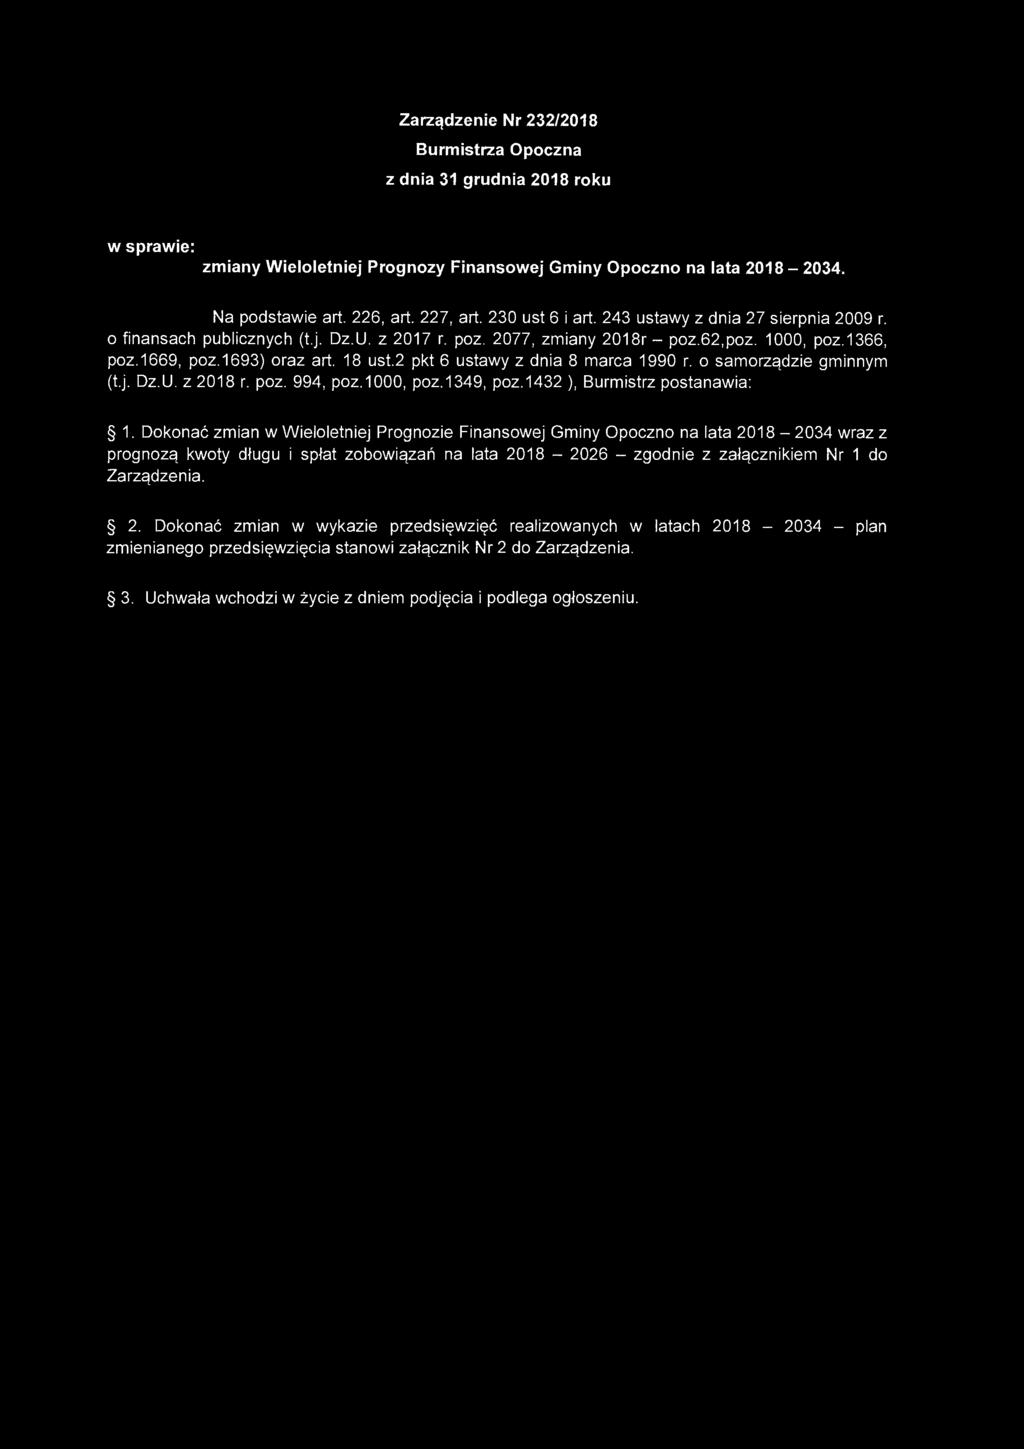 Zarządzenie Nr 232/2018 urmistrza Opozna z dnia 31 grudnia 2018 roku w sprawie: zmiany Wieloletniej Prognozy Finansowej Gminy Opozno na lata 2018-2034. Na podstawie art. 226, art. 227, art.